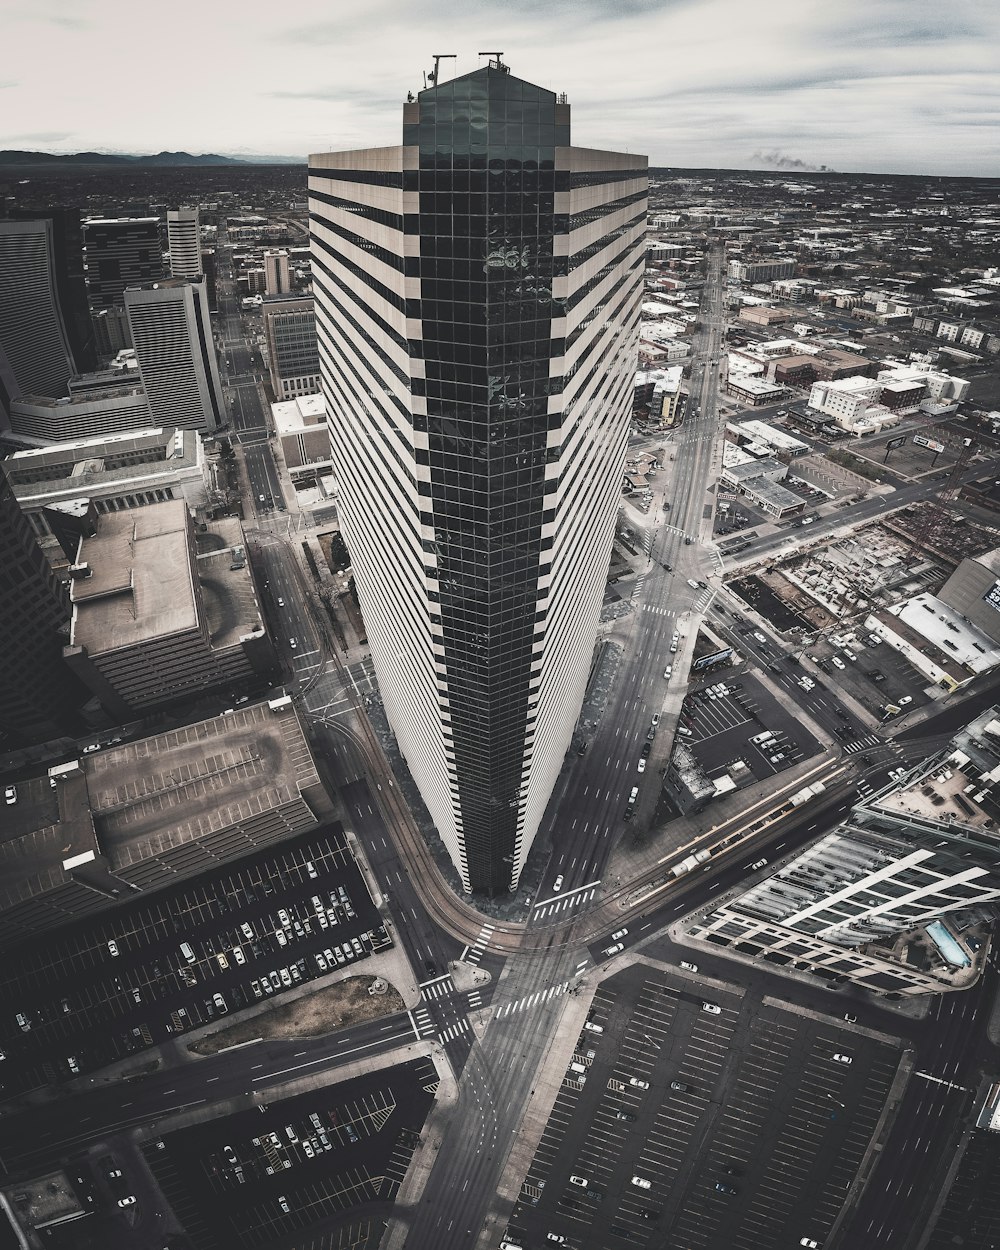 Fotografia a volo d'uccello di un grattacielo in calcestruzzo